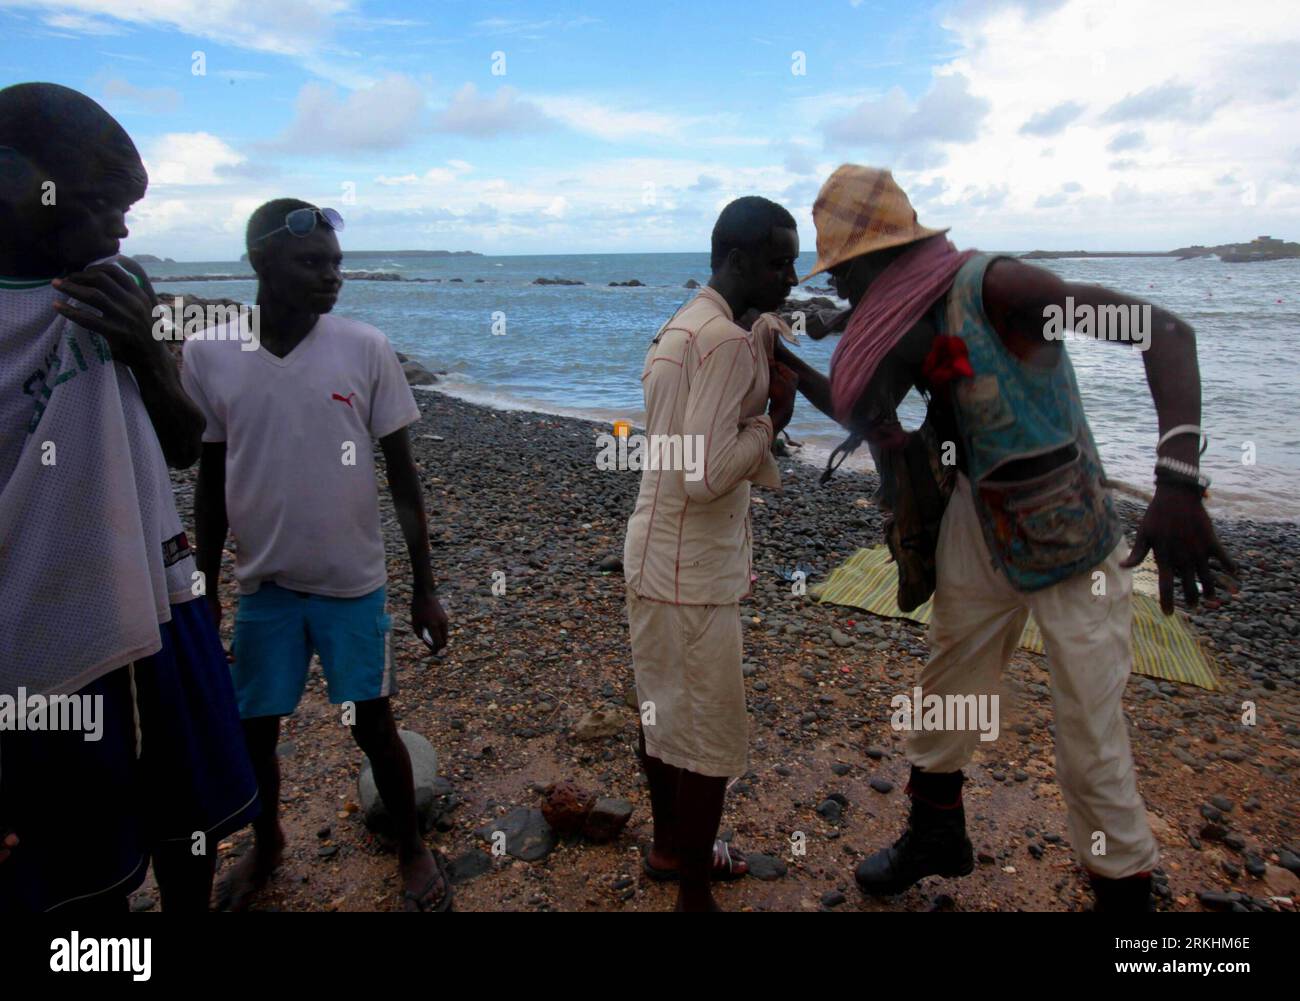 Bildnummer: 55868324 Datum: 19.08.2011 Copyright: imago/Xinhua (110831) -- DAKAR, 31. August 2011 (Xinhua) -- Foto aufgenommen am 19. August 2011 zeigt, dass Cisse(R) einen Kampf an einem Strand in Dakar, der Hauptstadt Senegals, stoppt. Der 59-jährige Cisse lebt seit mindestens zehn Jahren in seinem Make-Shift-Wickel aus Müll am Strand. Jeden Tag findet ein Wandel statt, aber Cisse bleibt in seiner eigenen Welt unverändert. Cisse war in der Vergangenheit Künstler und ist heute tatsächlich Künstler. Er schafft jedoch keine Werke mehr für Geld, und seine jetzige Arbeit ist es, was er für sein lebendiges envi macht Stockfoto